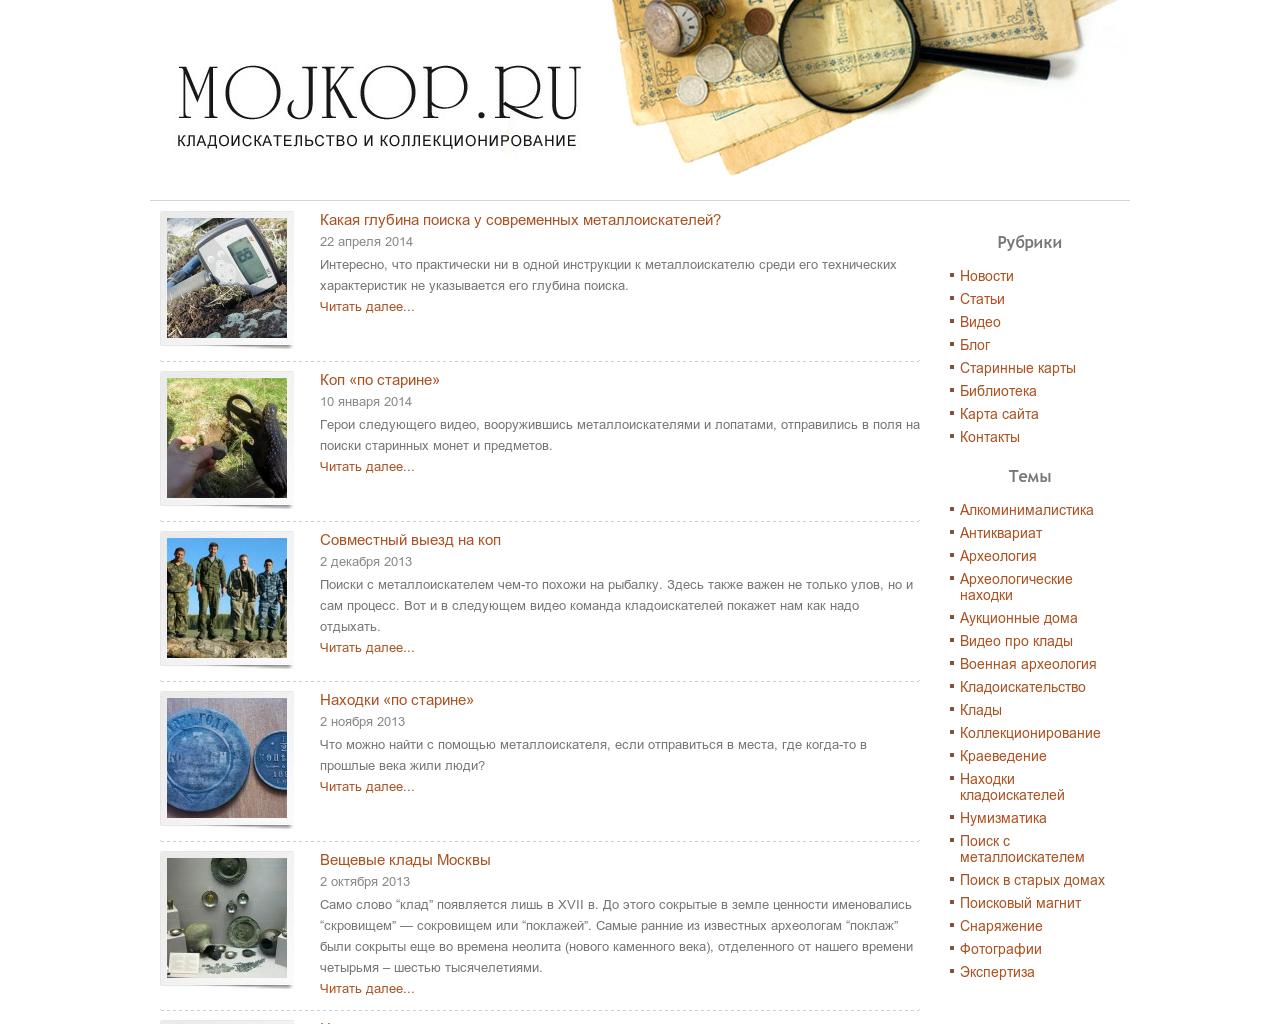 Изображение сайта mojkop.ru в разрешении 1280x1024